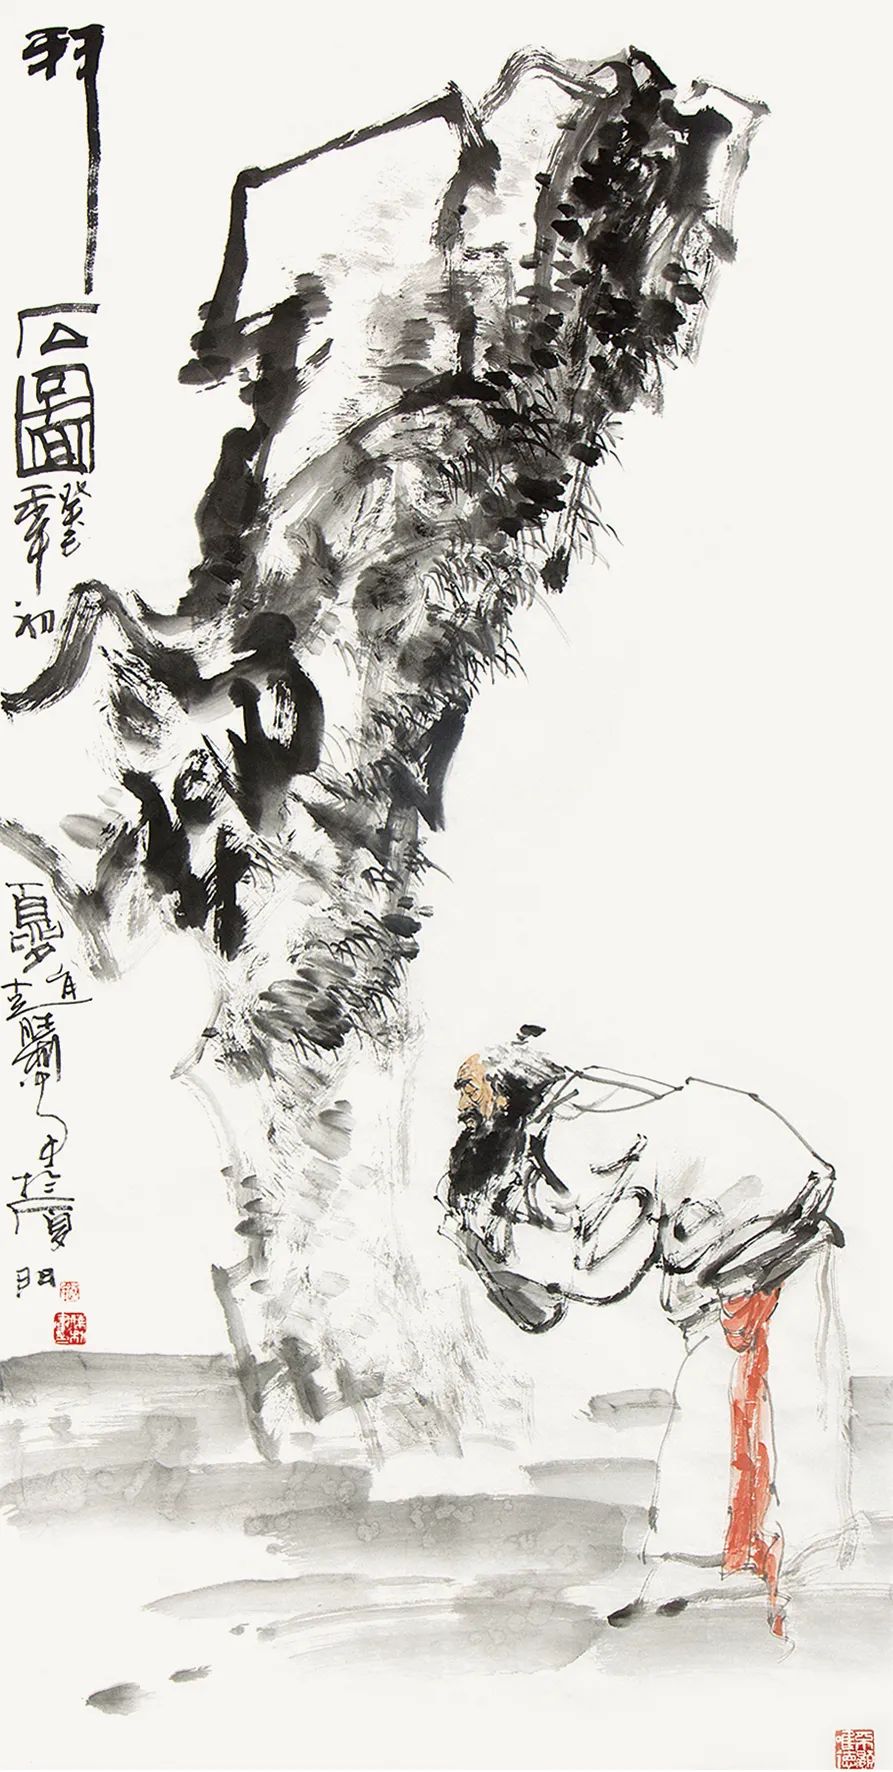 使命与梦想，责任与担当——著名画家赵胜利水墨人物画体现的“中国精神”